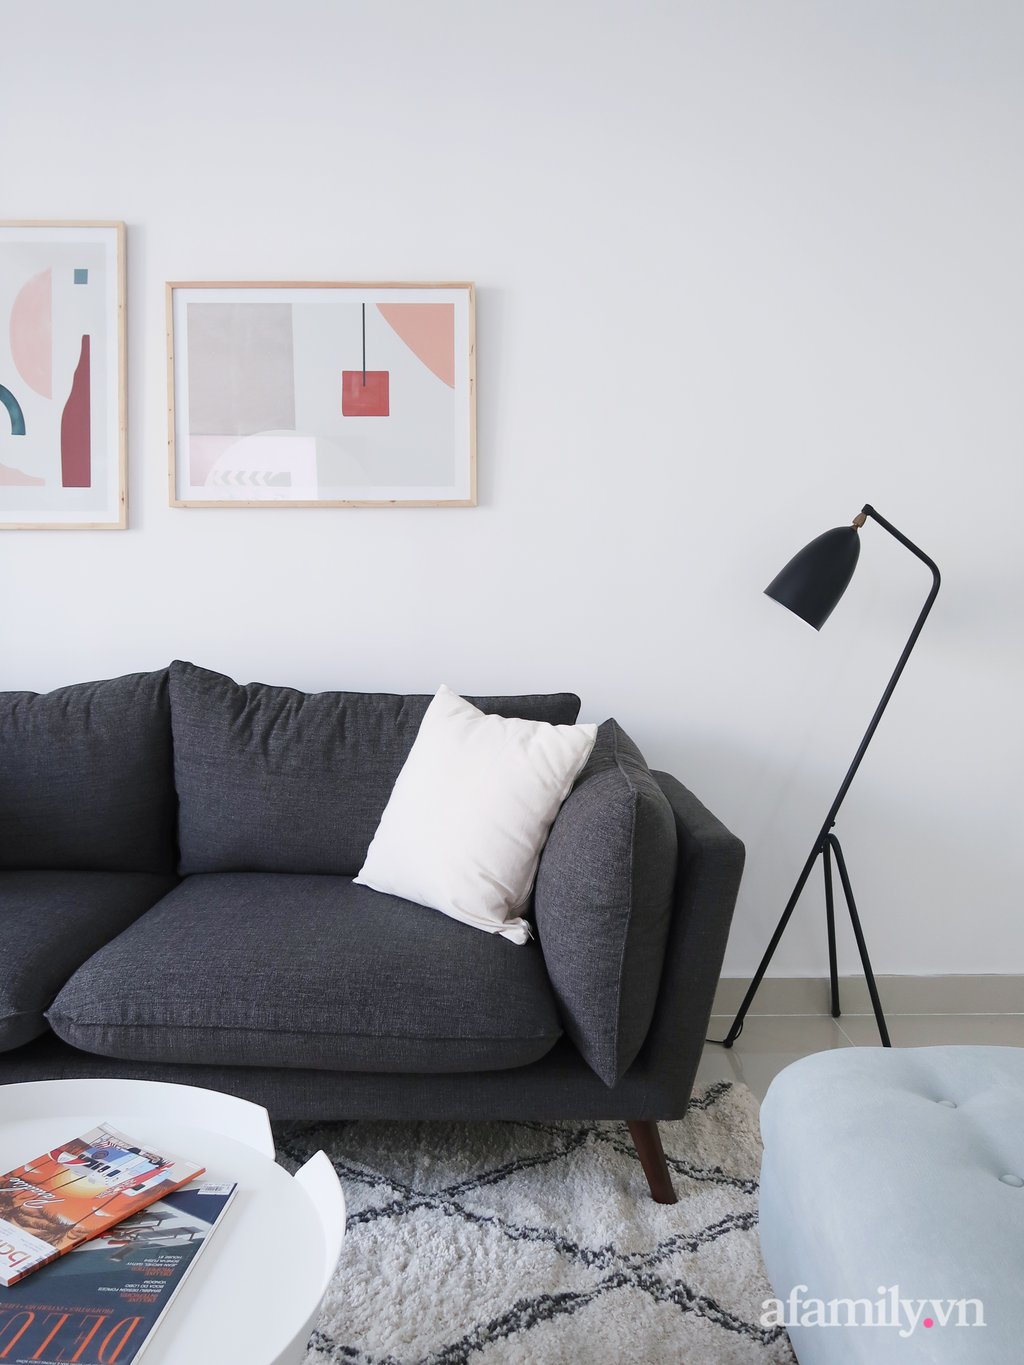 Mẫu ghế sofa sử dụng là thiết kế cơ bản, đề cao sự thoải mái và êm ái cho người dùng.